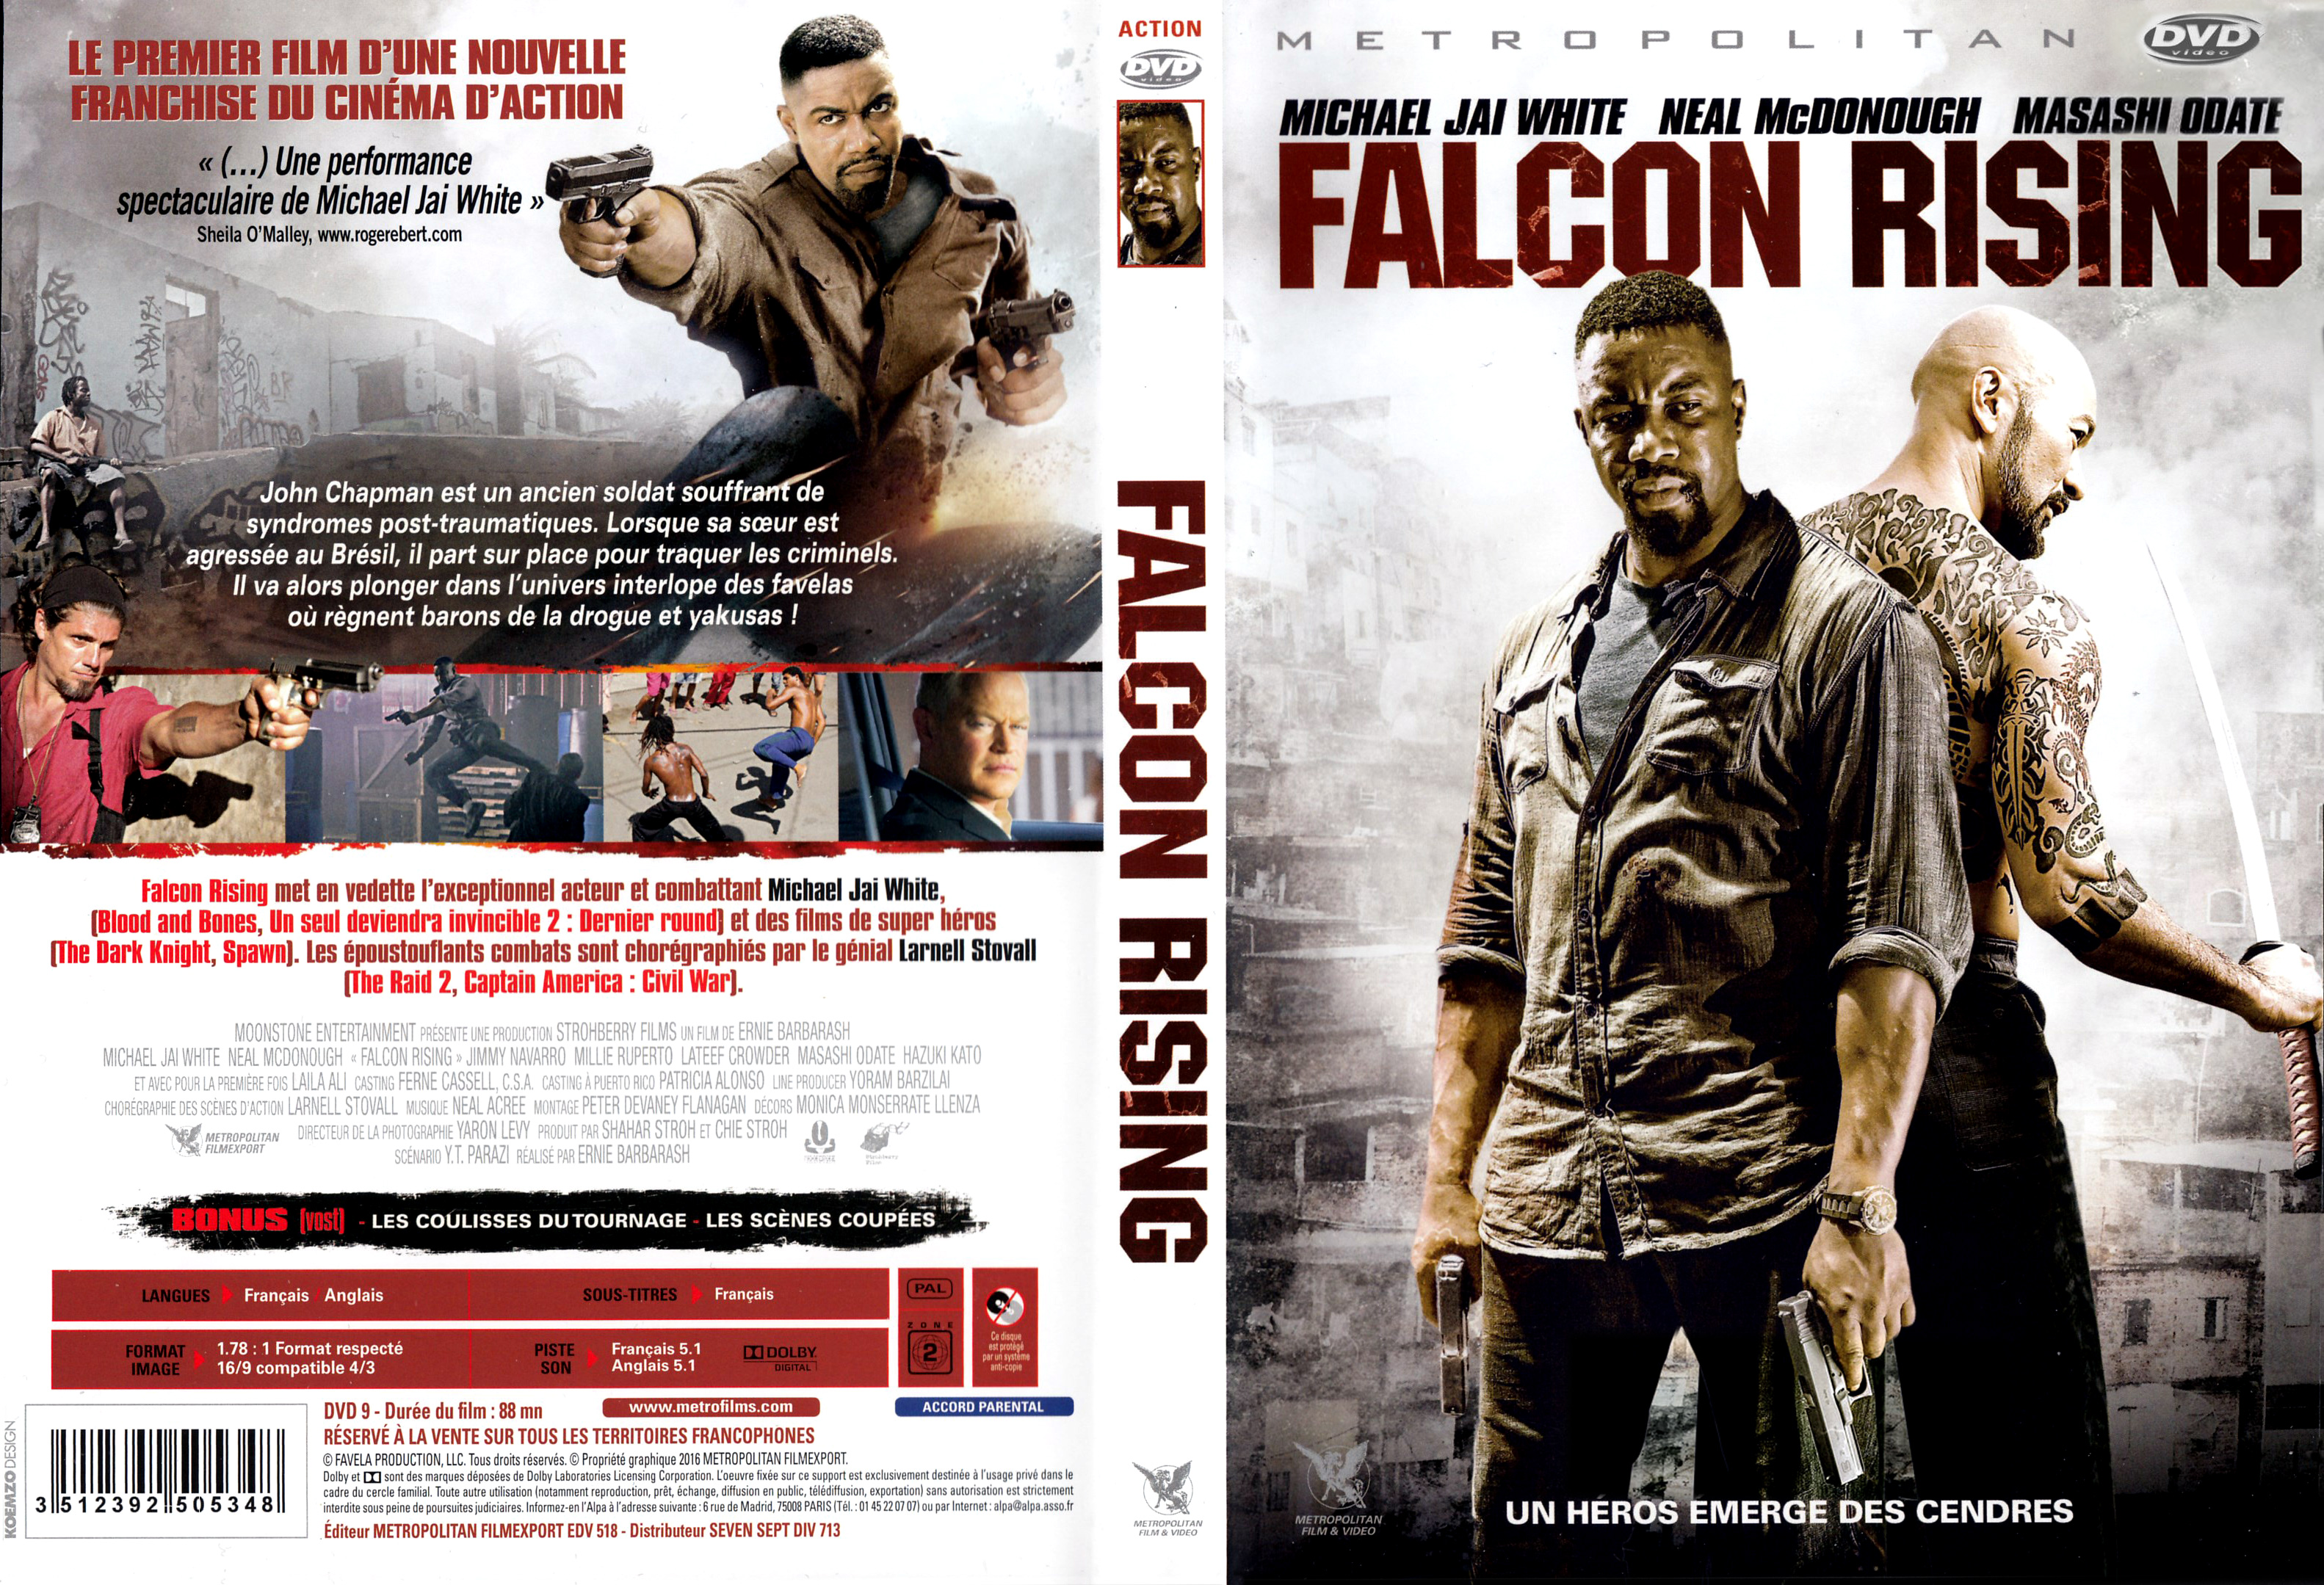 Jaquette DVD Falcon Rising v2